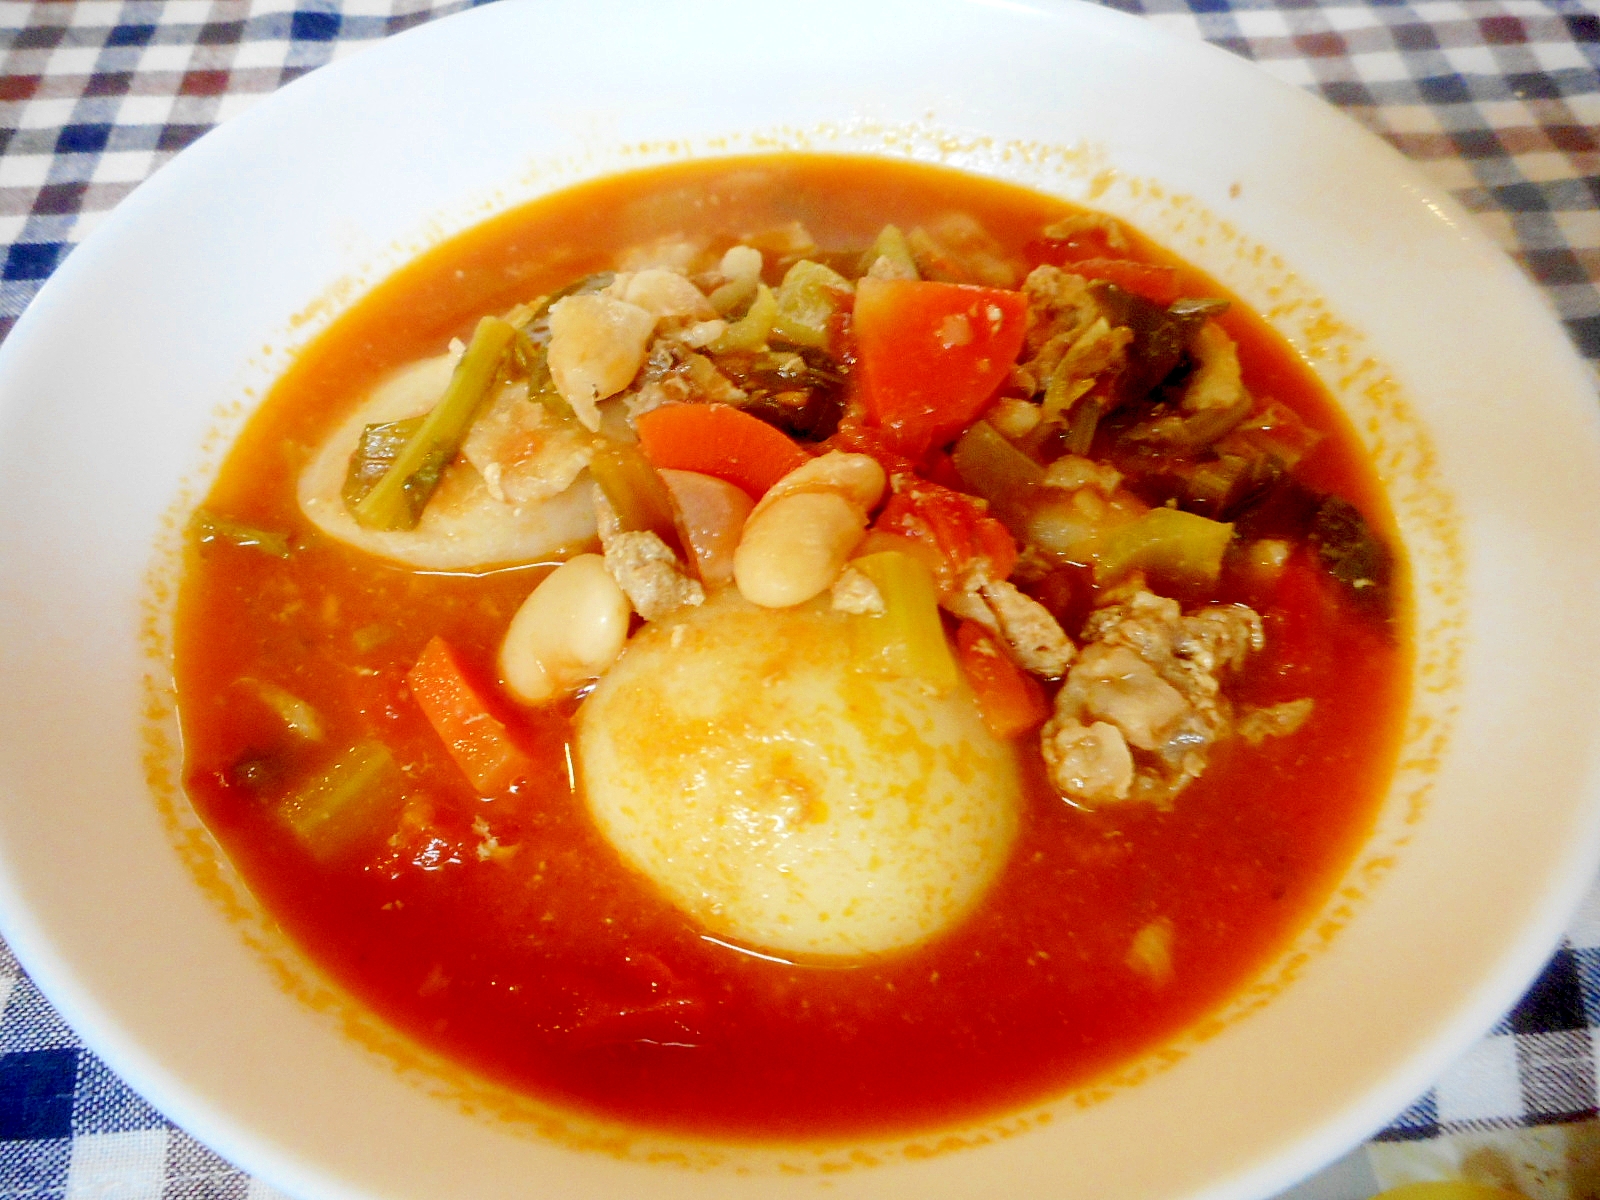 カブと白インゲン豆のトマトスープ